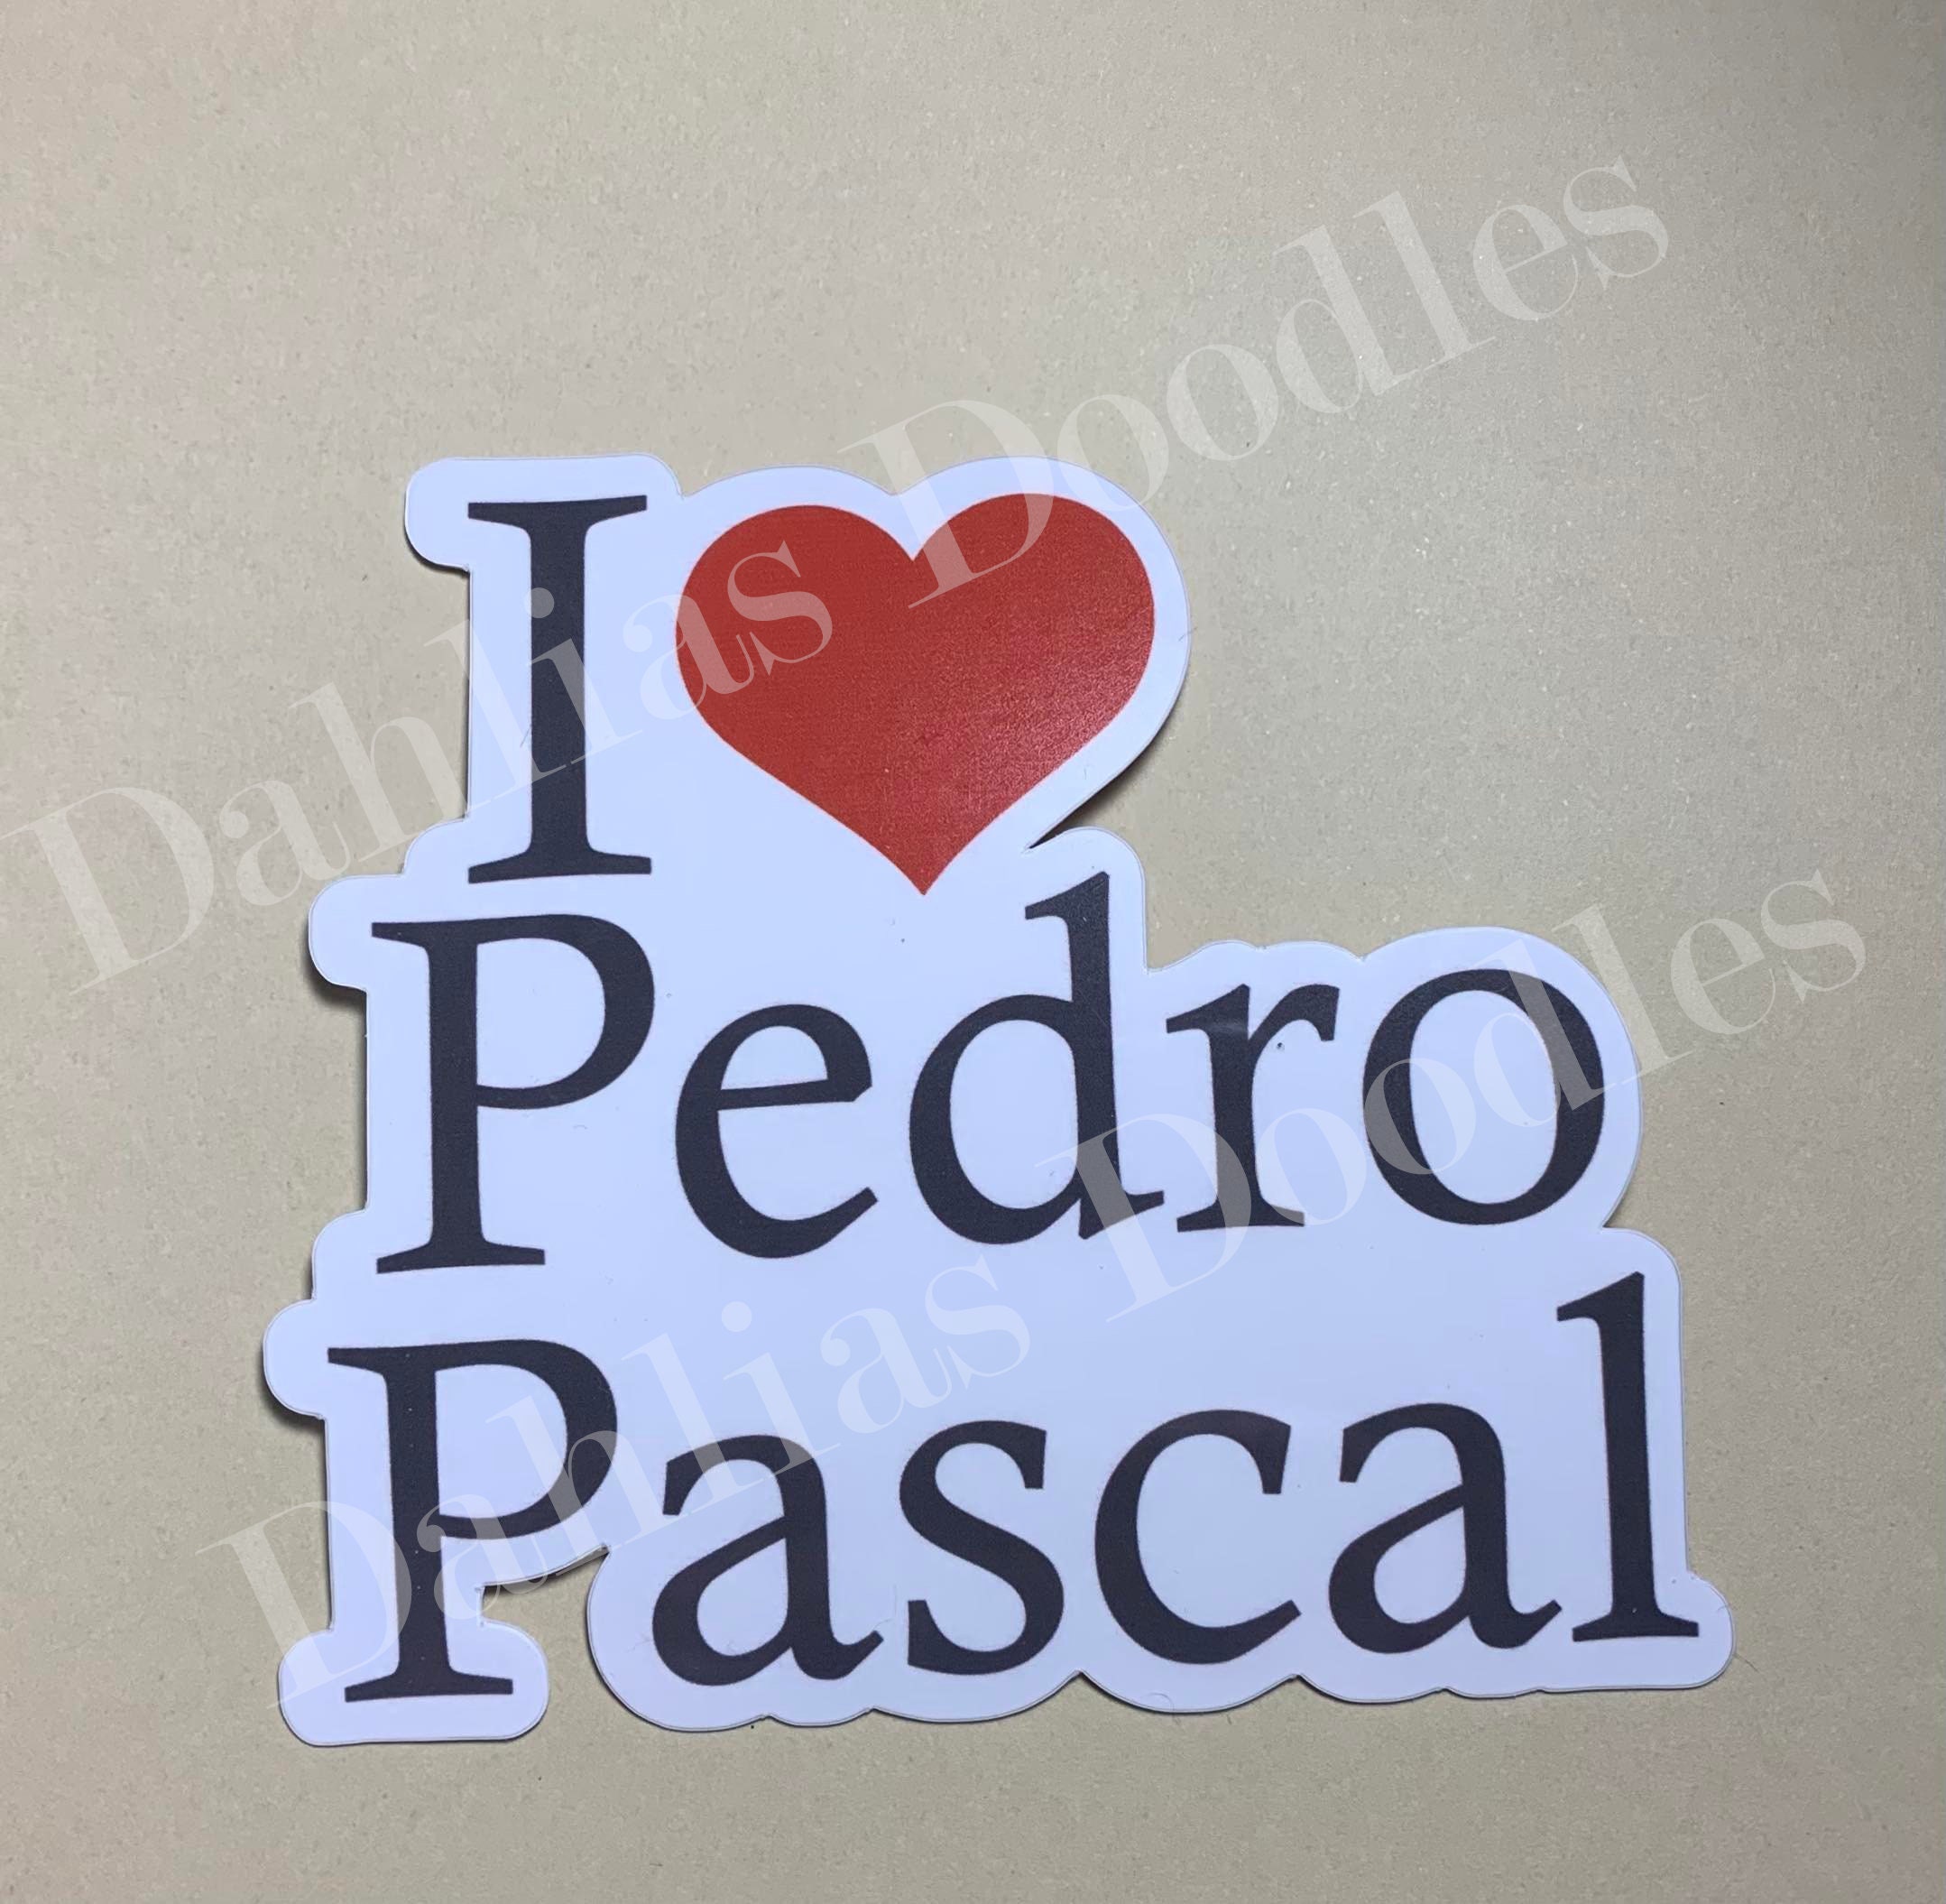 Pablo Acosta DECAL Sticker El ZORRO de Ojinaga MEXICO DECAL BUY 3 GEY 1  FREE